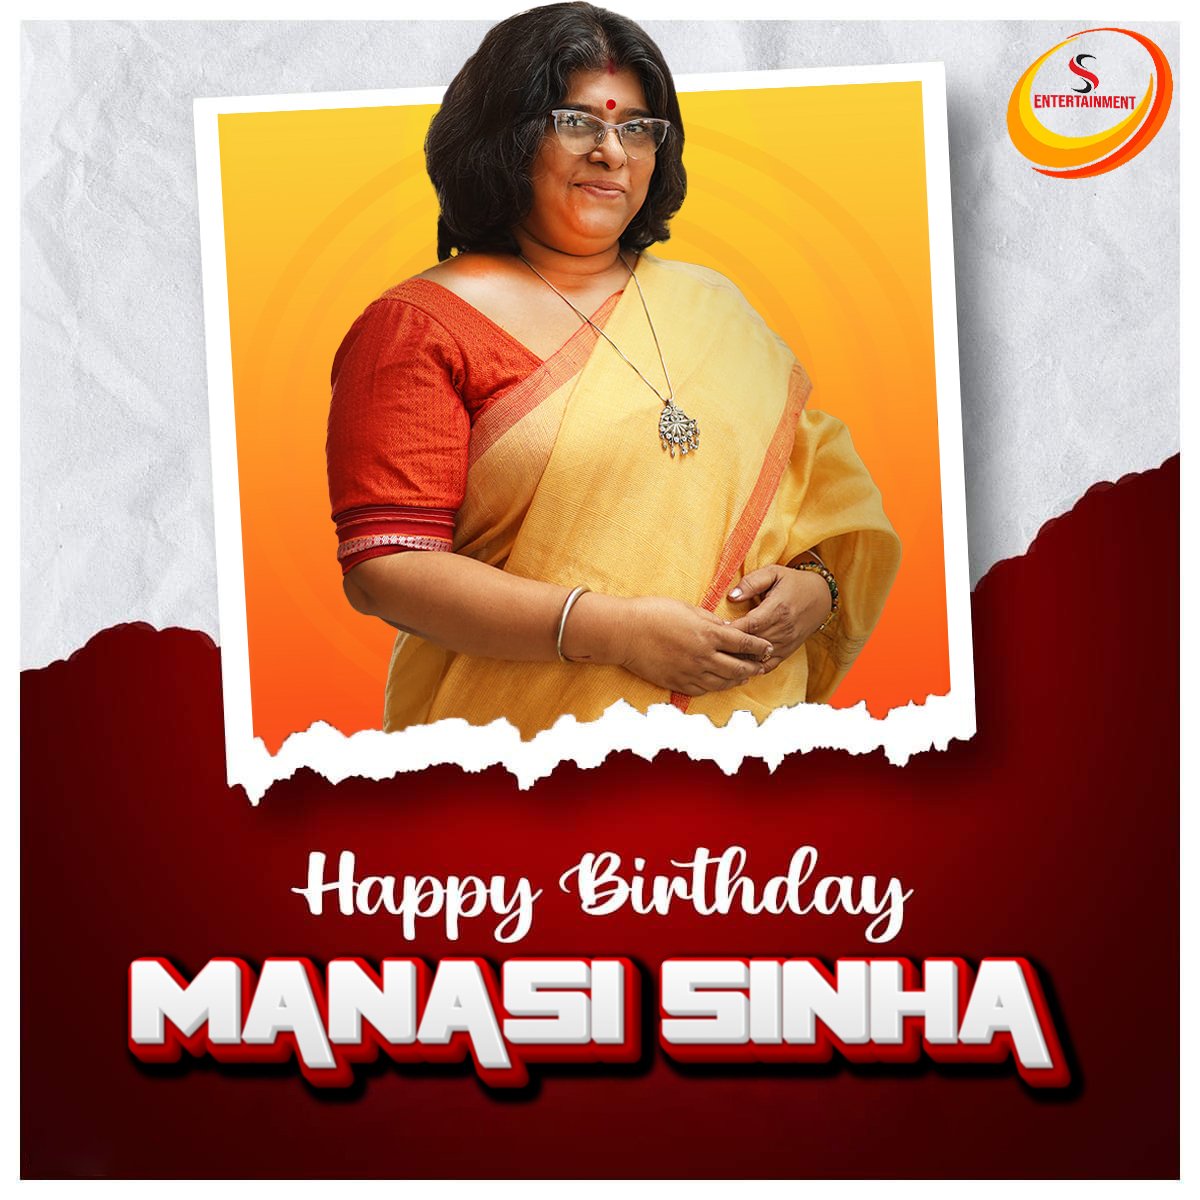 তোমার প্রতিটি দিন হোক আরও উজ্জ্বল। তোমার এই বিশেষ দিনে @sentertain46716 এর পরিবারের পক্ষ থেকে জানাই শুভেচ্ছা ও ভালোবাসা। শুভ জন্মদিন Manasi দিদি ✨🎁🎈🎂  ❤️
.

@SEntertain46716
.

#HappyBirthdayManasiSinha 
#tollywood
#actress
#director 
#ManasiSinha 
#SouvikGhosh